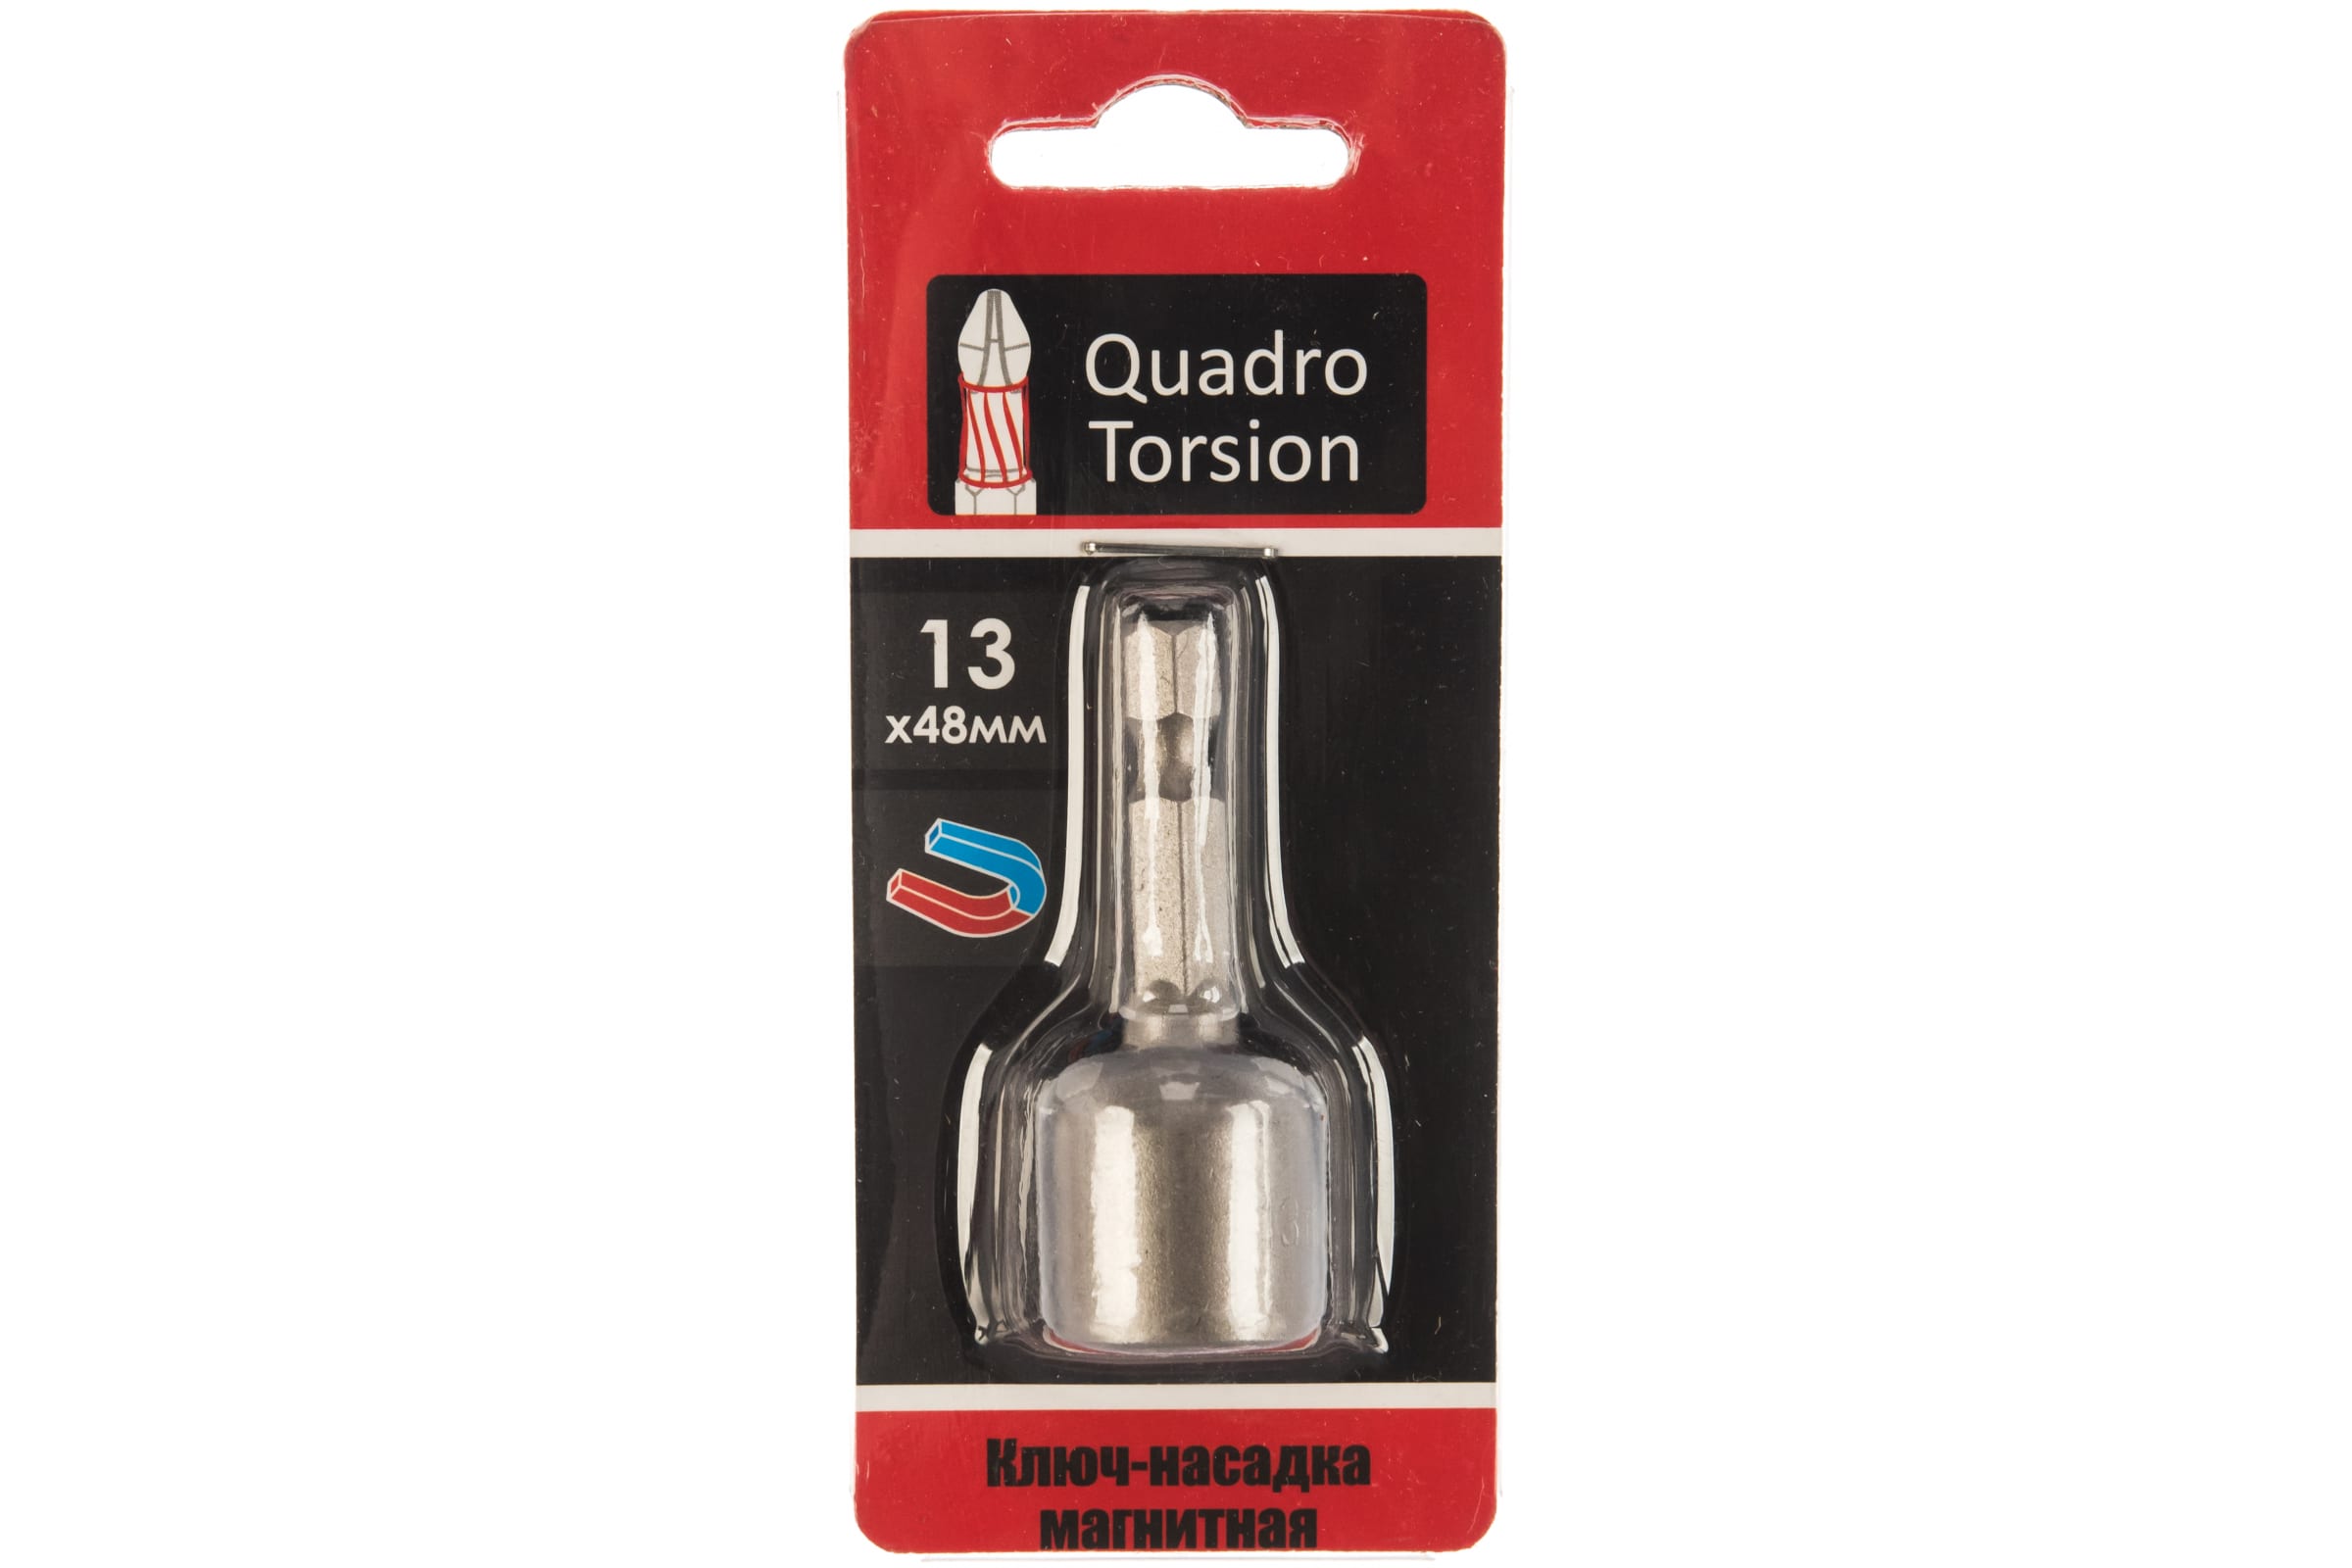 Quadro Torsion Ключ-насадка магнитная 13х48мм 1 шт./карта 400113 магнитная насадка ключ quadro torsion 400107